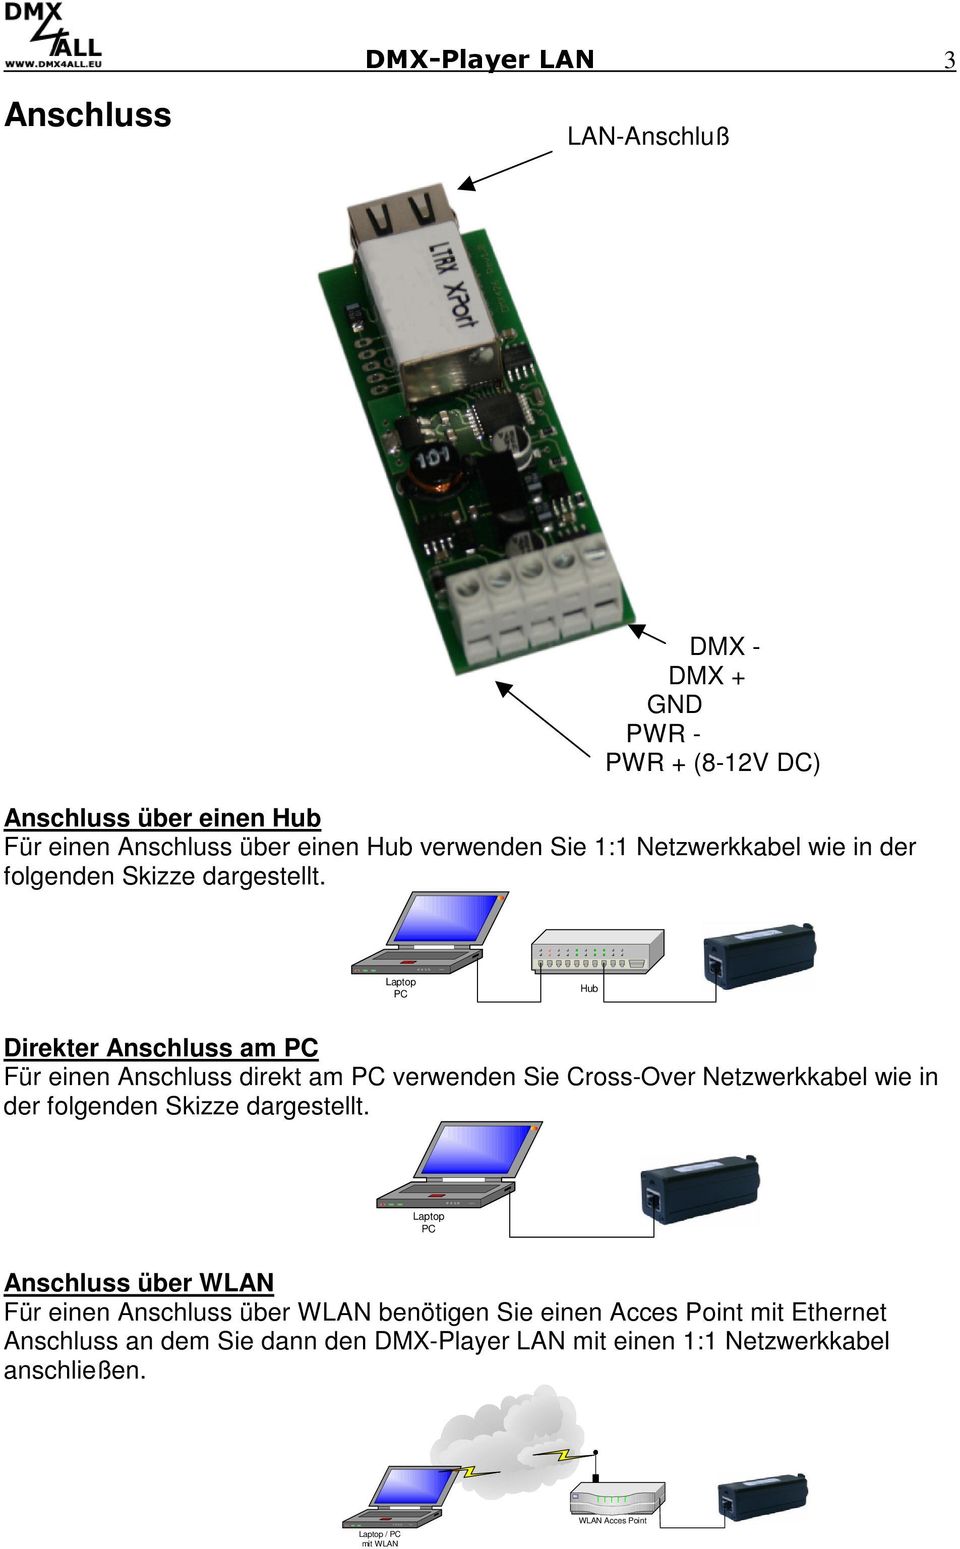 Laptop PC Hub Direkter Anschluss am PC Für einen Anschluss direkt am PC verwenden Sie Cross-Over Netzwerkkabel wie in der folgenden Skizze